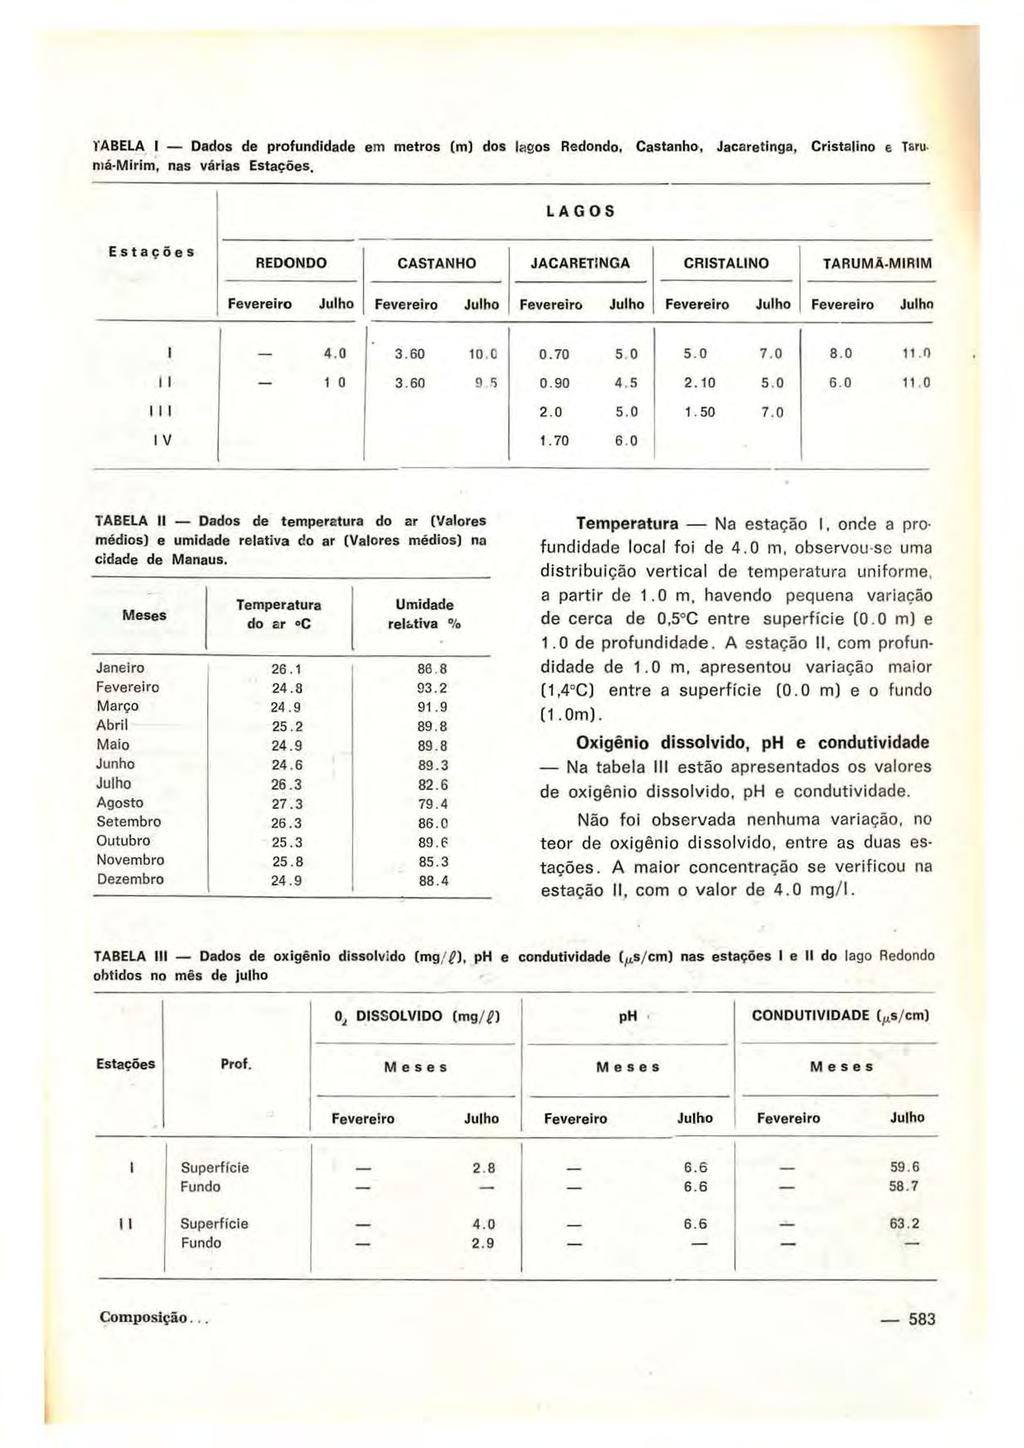 TABELA I Dados de profundidade em metros (m) dos lagos Redondo, Castanho, Jacaretinga, Cristalino e Tsru ntá-mirim, nas várias Estações.